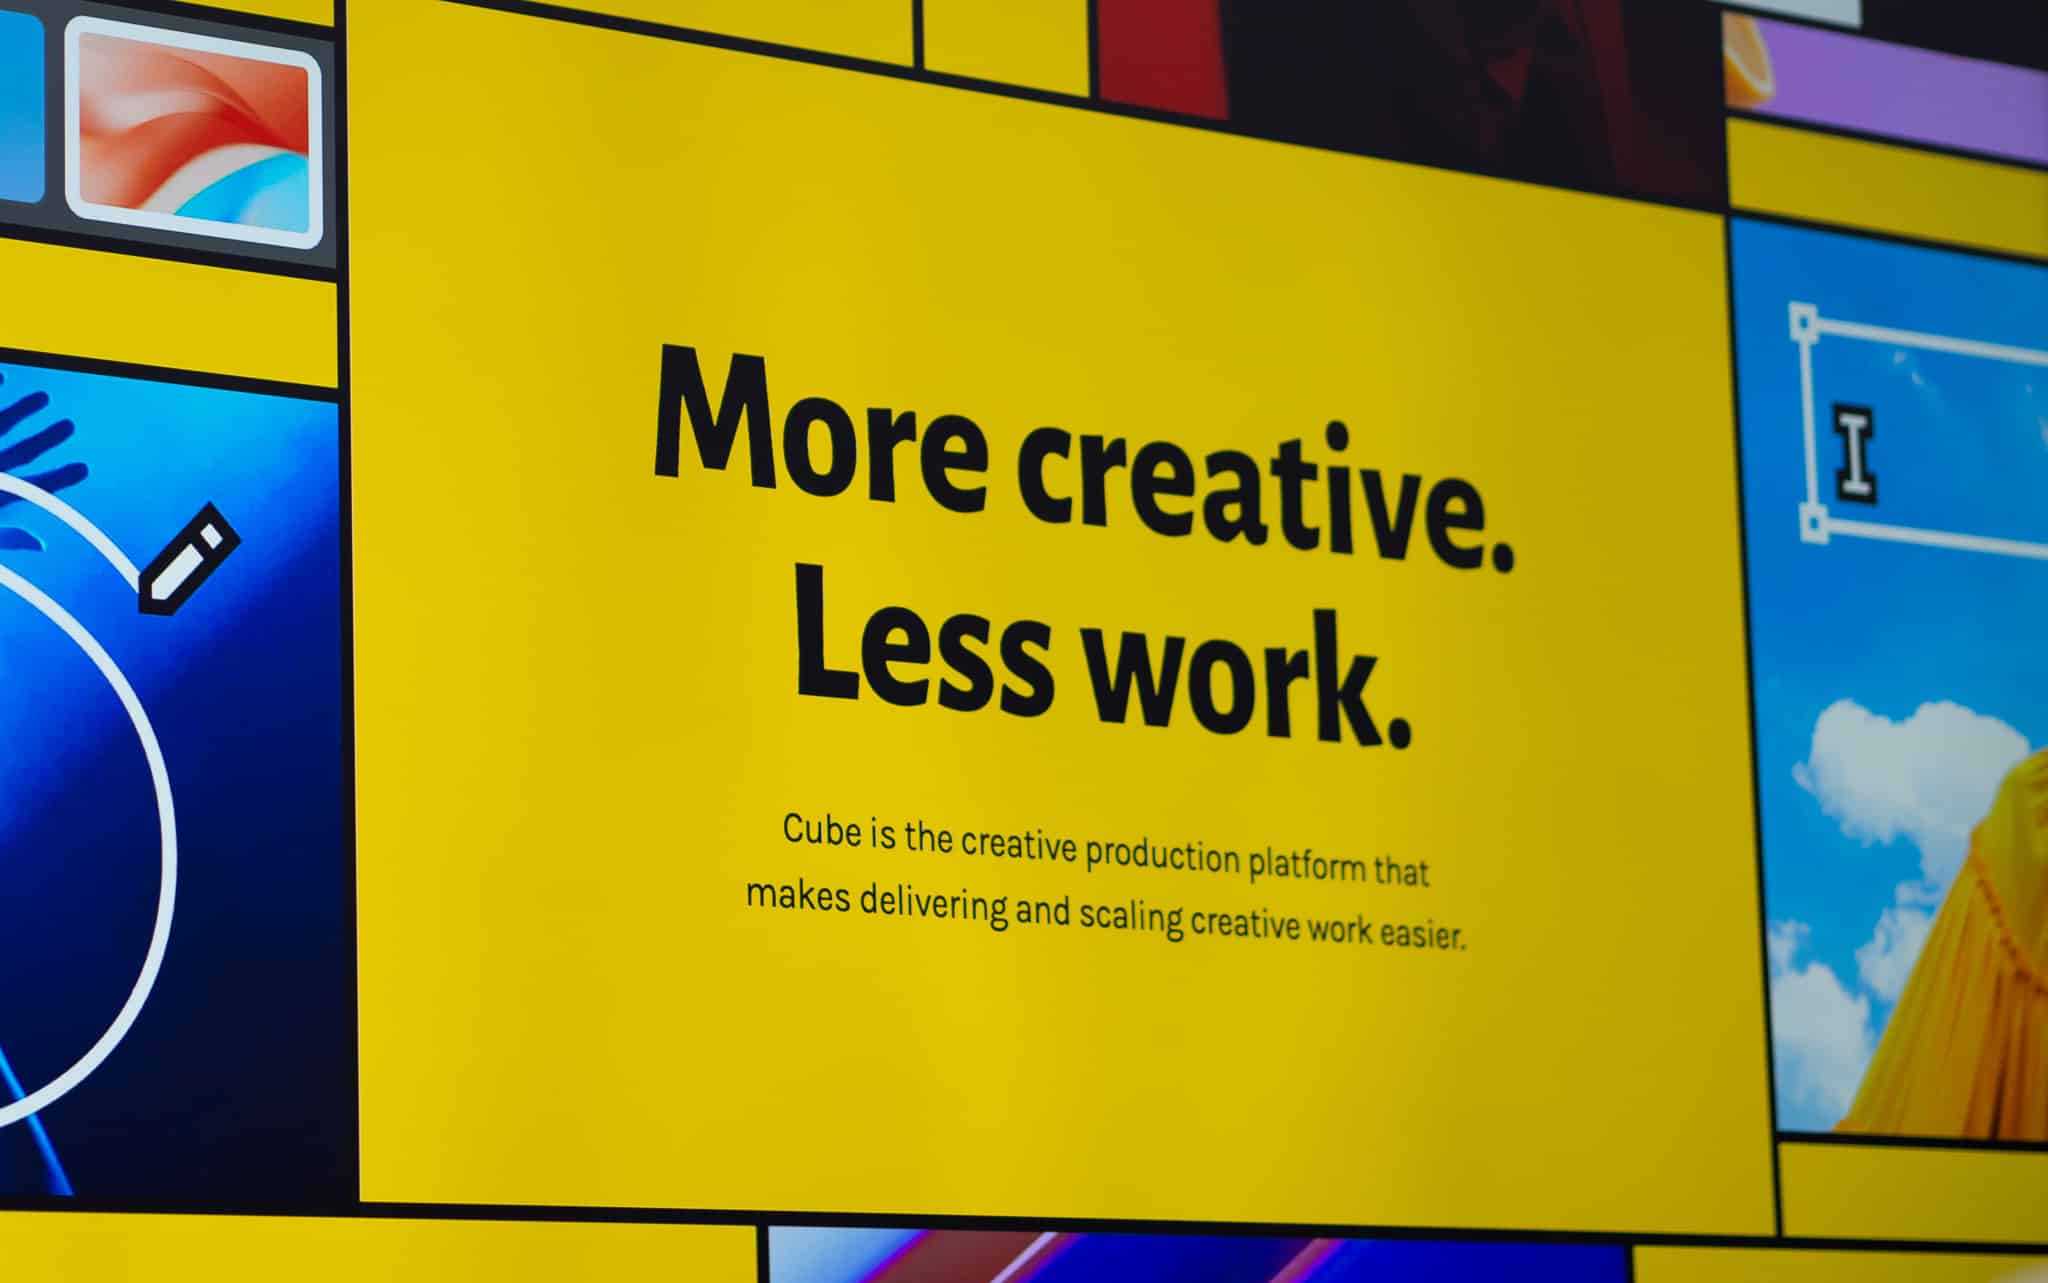 Ein gelbes Plakat mit der Aufschrift "More creative. Less work. Cube is the creative production platform that makes delivering and scaling creative work easier." Es sind verschiedene bunte Bilder rund um das Plakat zu sehen.